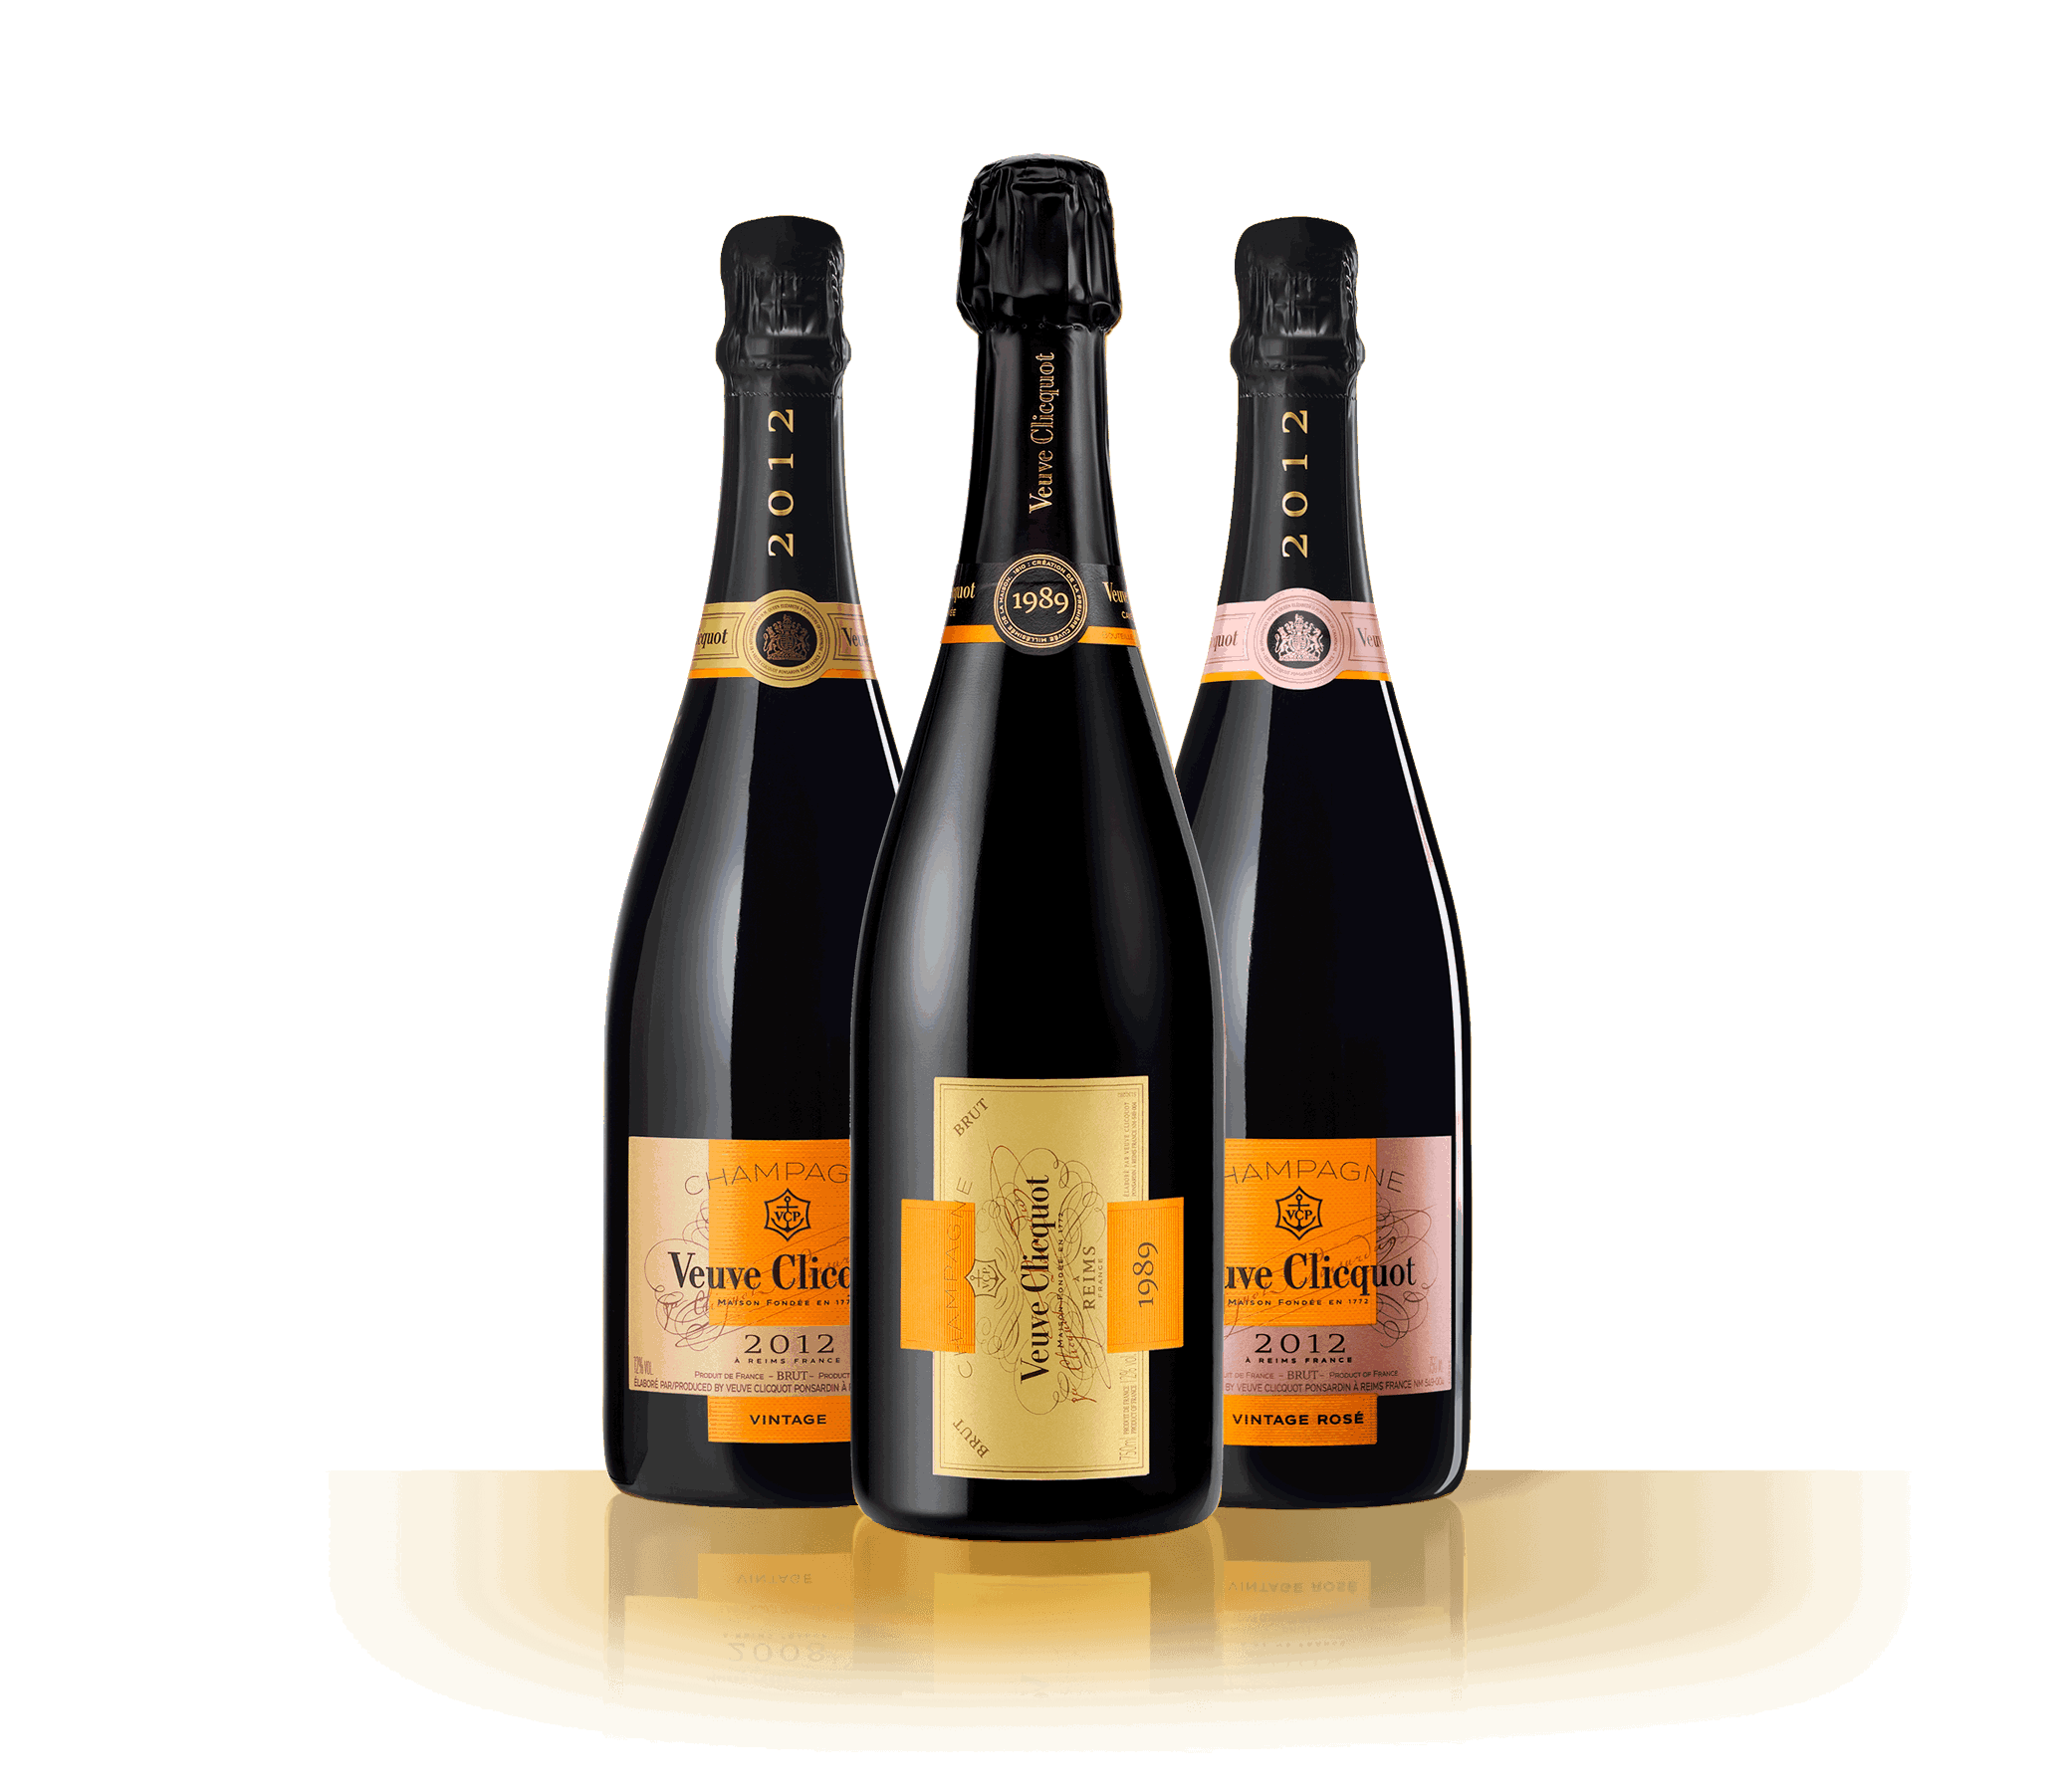 Botellas de champagne Veuve Clicquot Vintage 